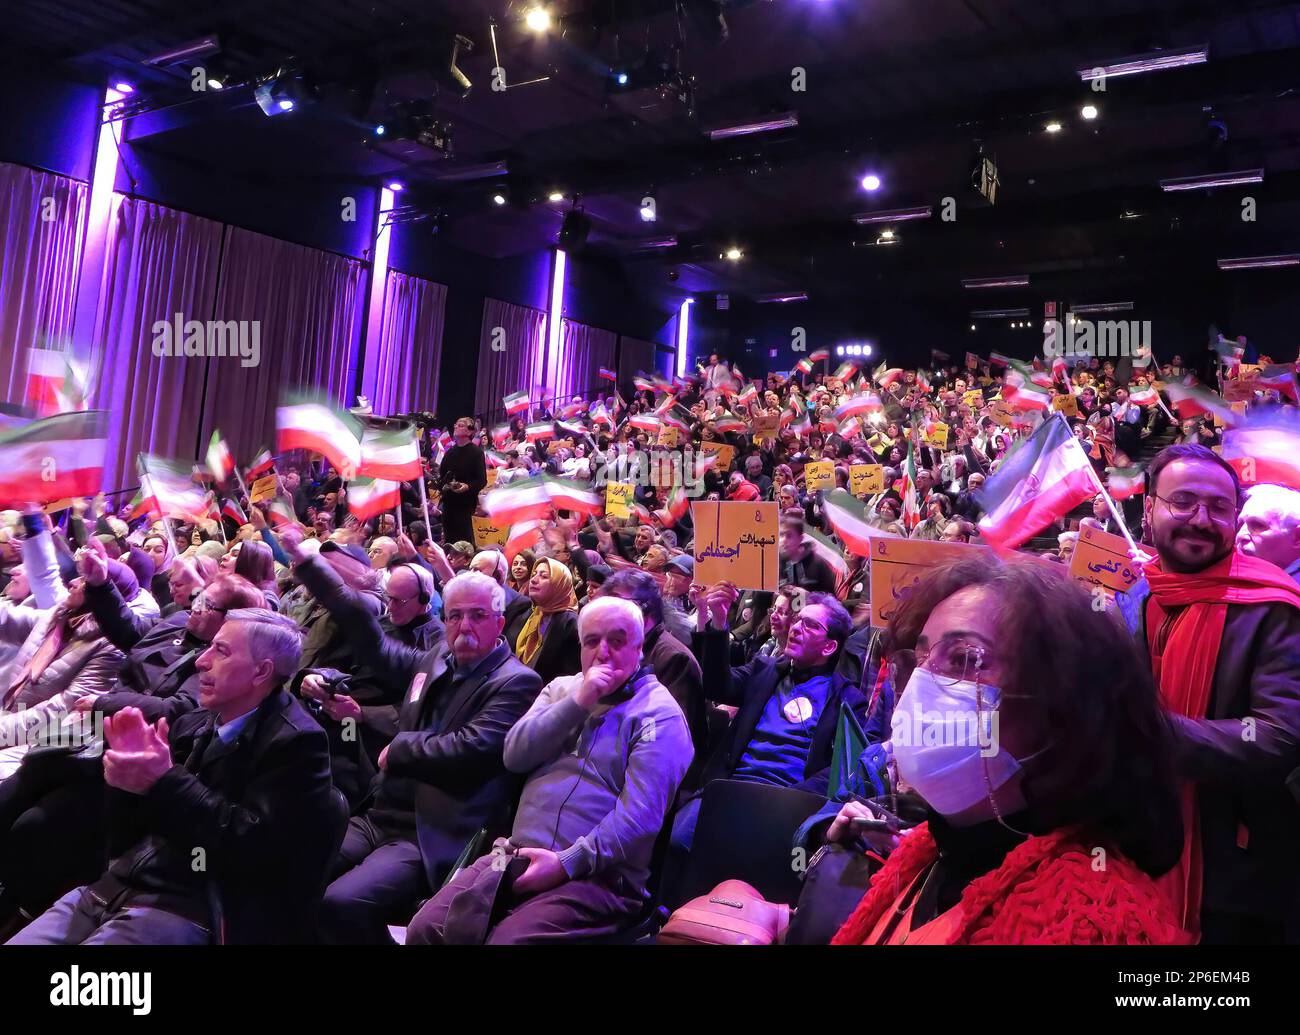 Brüssel, Belgien. 04. März 2023. Eine Menge Teilnehmer hört den Rednern während einer Konferenz zu, die vom iranischen Widerstand ausgerichtet wird. Renommierte Führerinnen aus Europa und den USA nahmen an der Konferenz Teil. Der Schwerpunkt lag auf der führenden Rolle der Frauen in der iranischen Volksrevolution und ihrem Kampf gegen das frauenfeindliche Regime im Iran. Hauptrednerin war Maryam Rajavi, gewählte Präsidentin des Nationalen Widerstandsrates Irans. Kredit: SOPA Images Limited/Alamy Live News Stockfoto